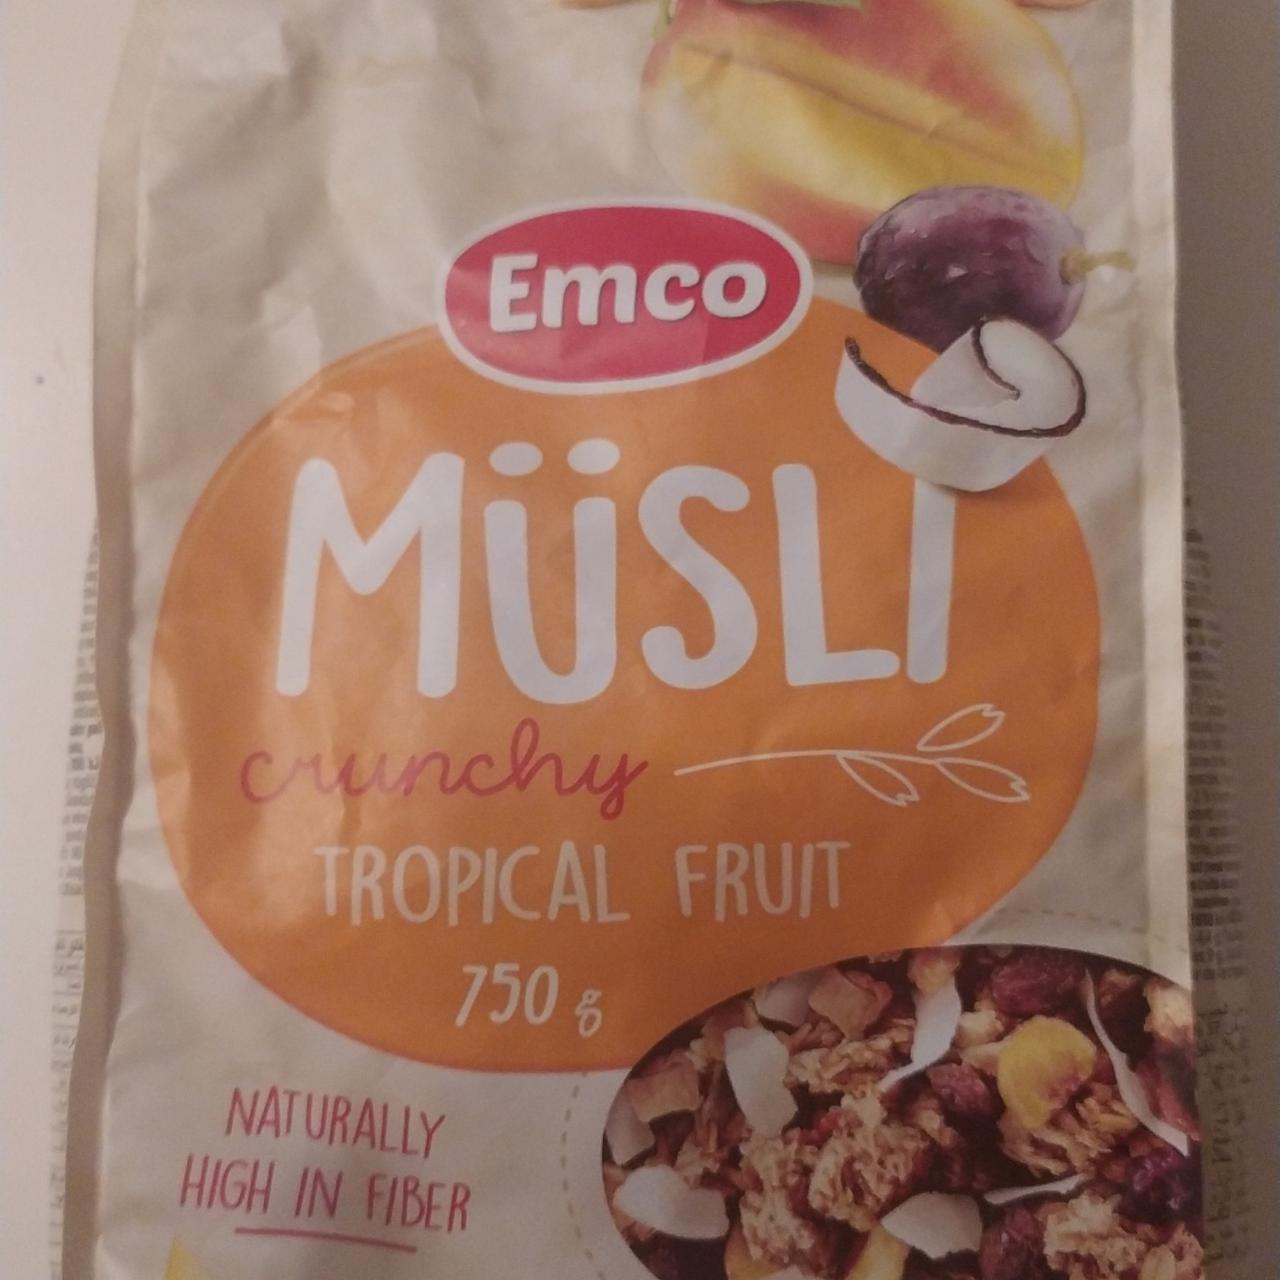 Fotografie - Müsli Crunchy Tropical Fruit Emco